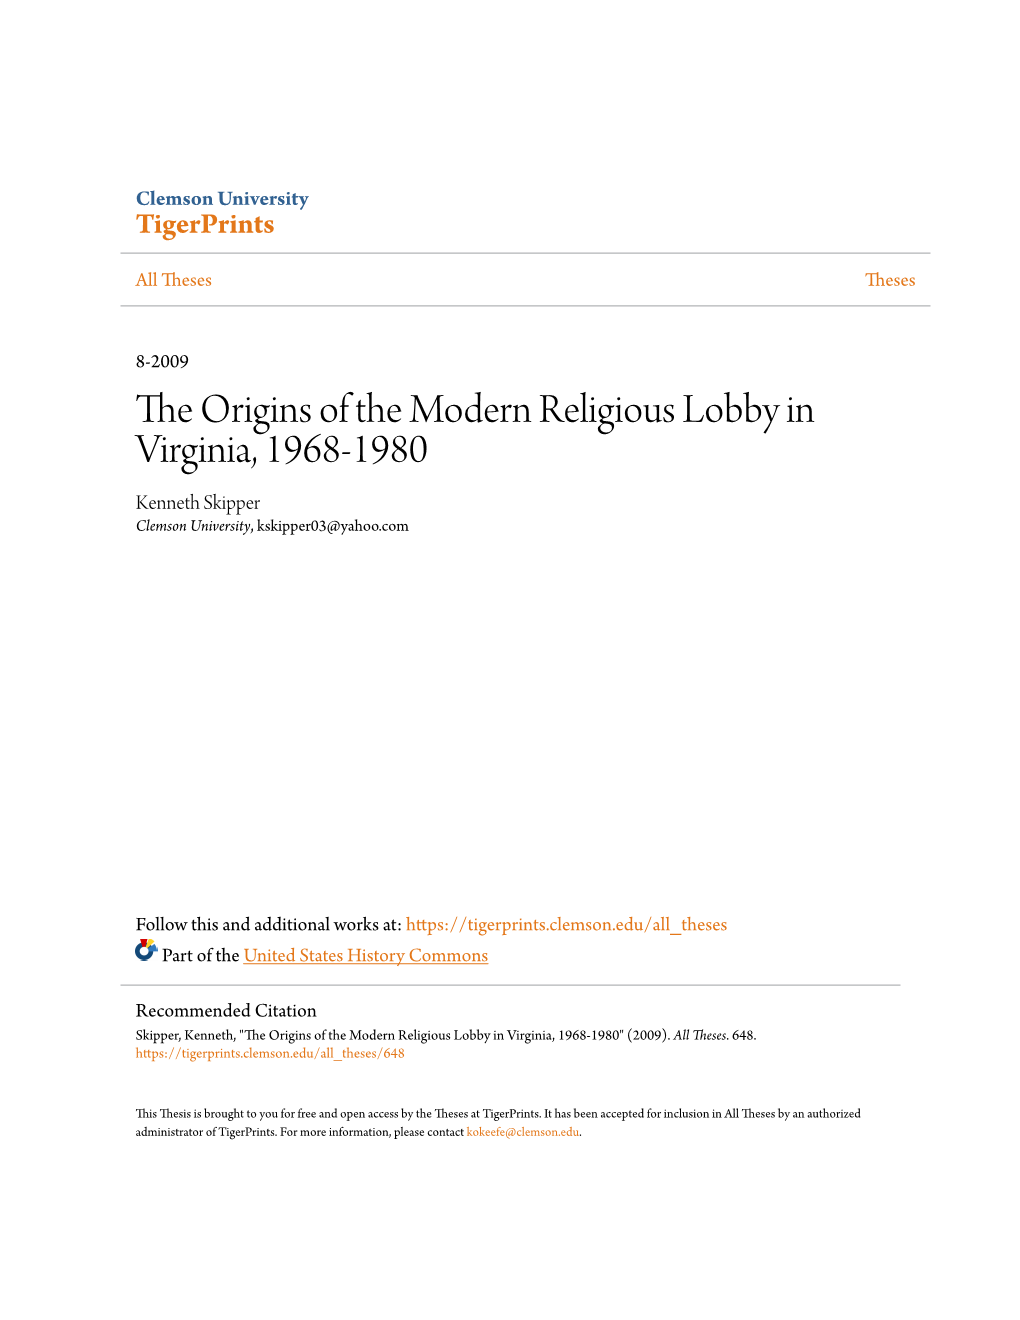 The Origins of the Modern Religious Lobby in Virginia, 1968-1980 Kenneth Skipper Clemson University, Kskipper03@Yahoo.Com